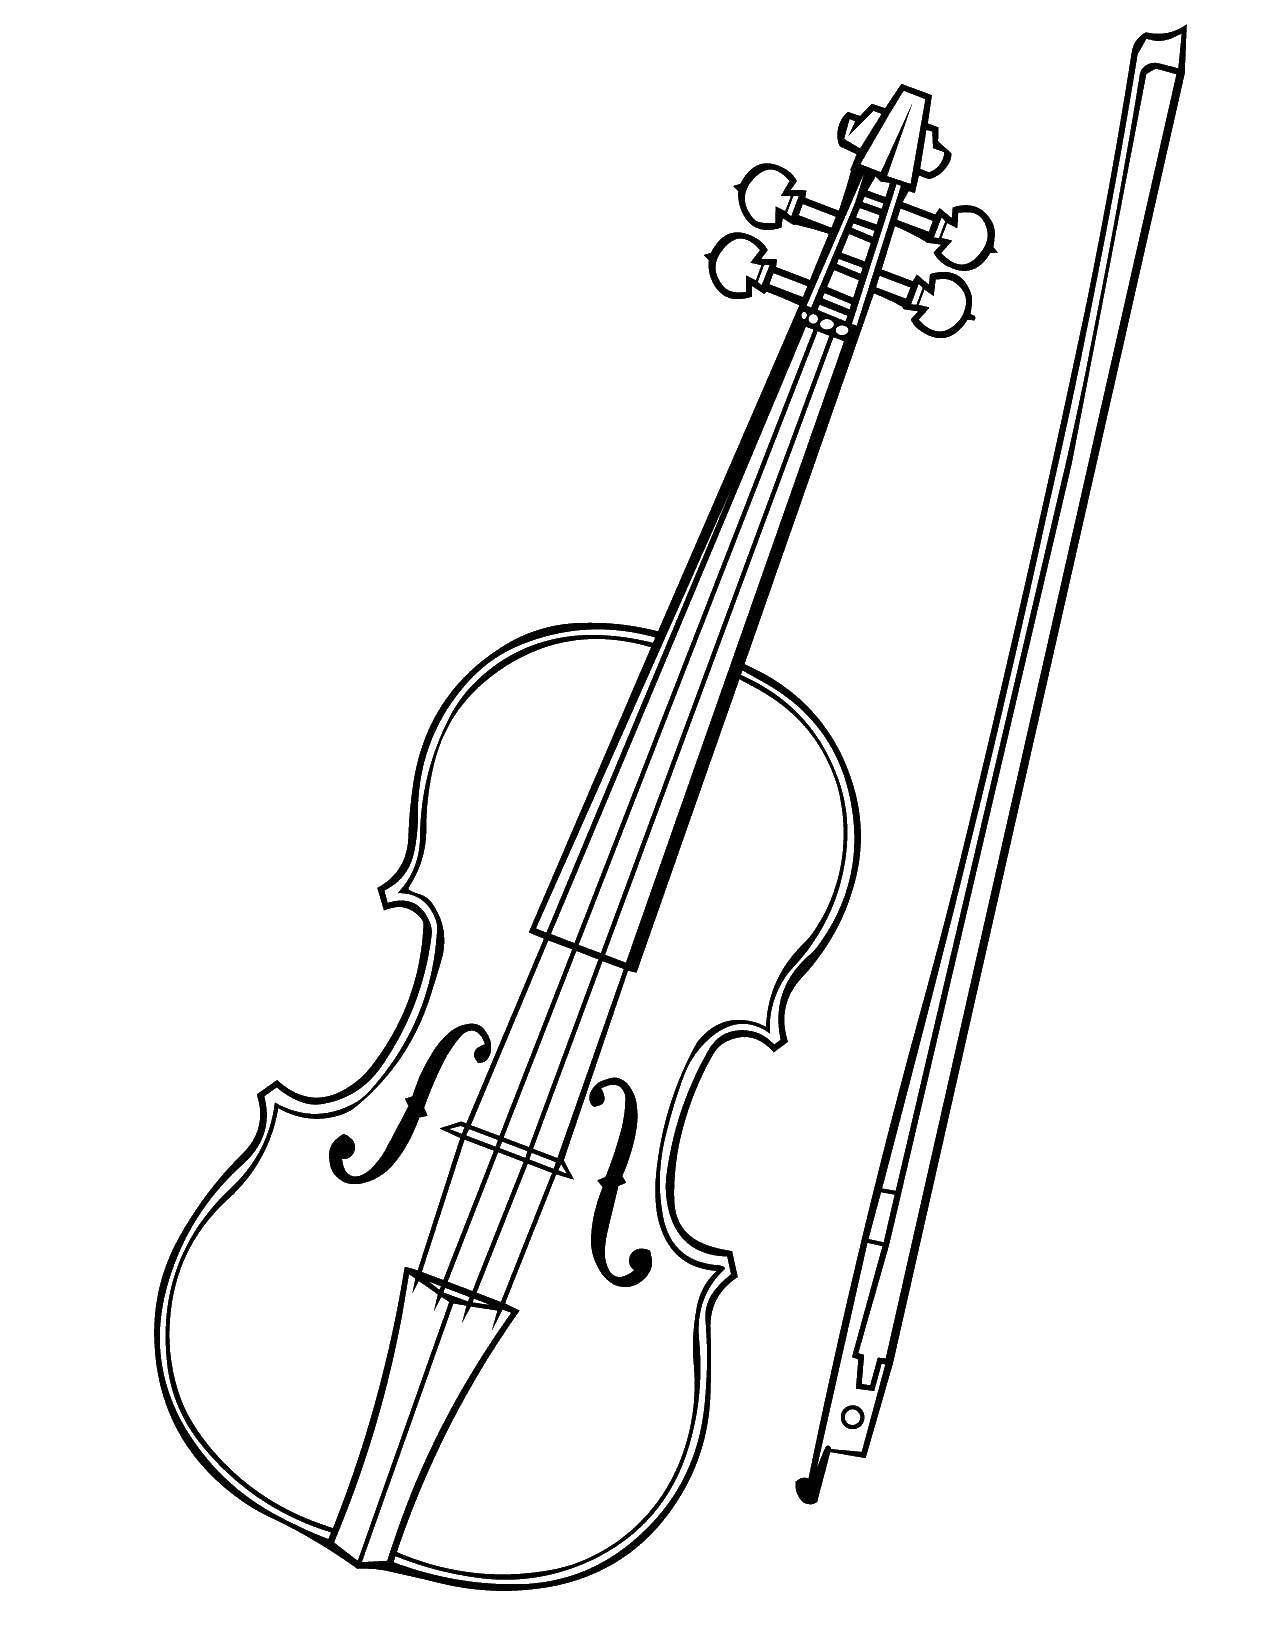 Раскраска музыкальных инструментов и скрипки (инструменты, скрипка)